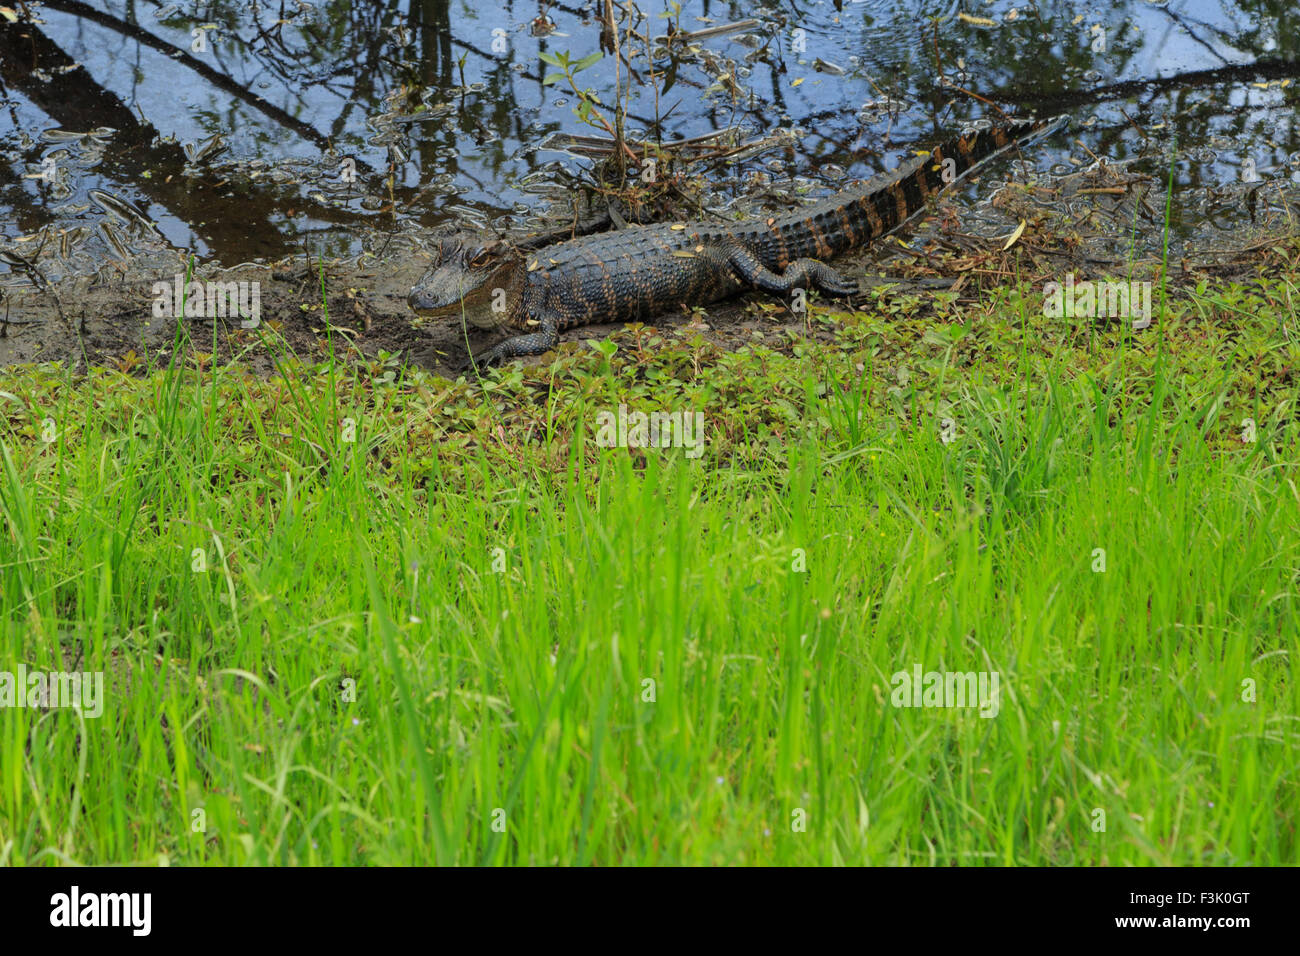 Ein Foto von einer juvenilen amerikanischer Alligator in freier Wildbahn in der Nähe von Savannah in Georgia. Stockfoto